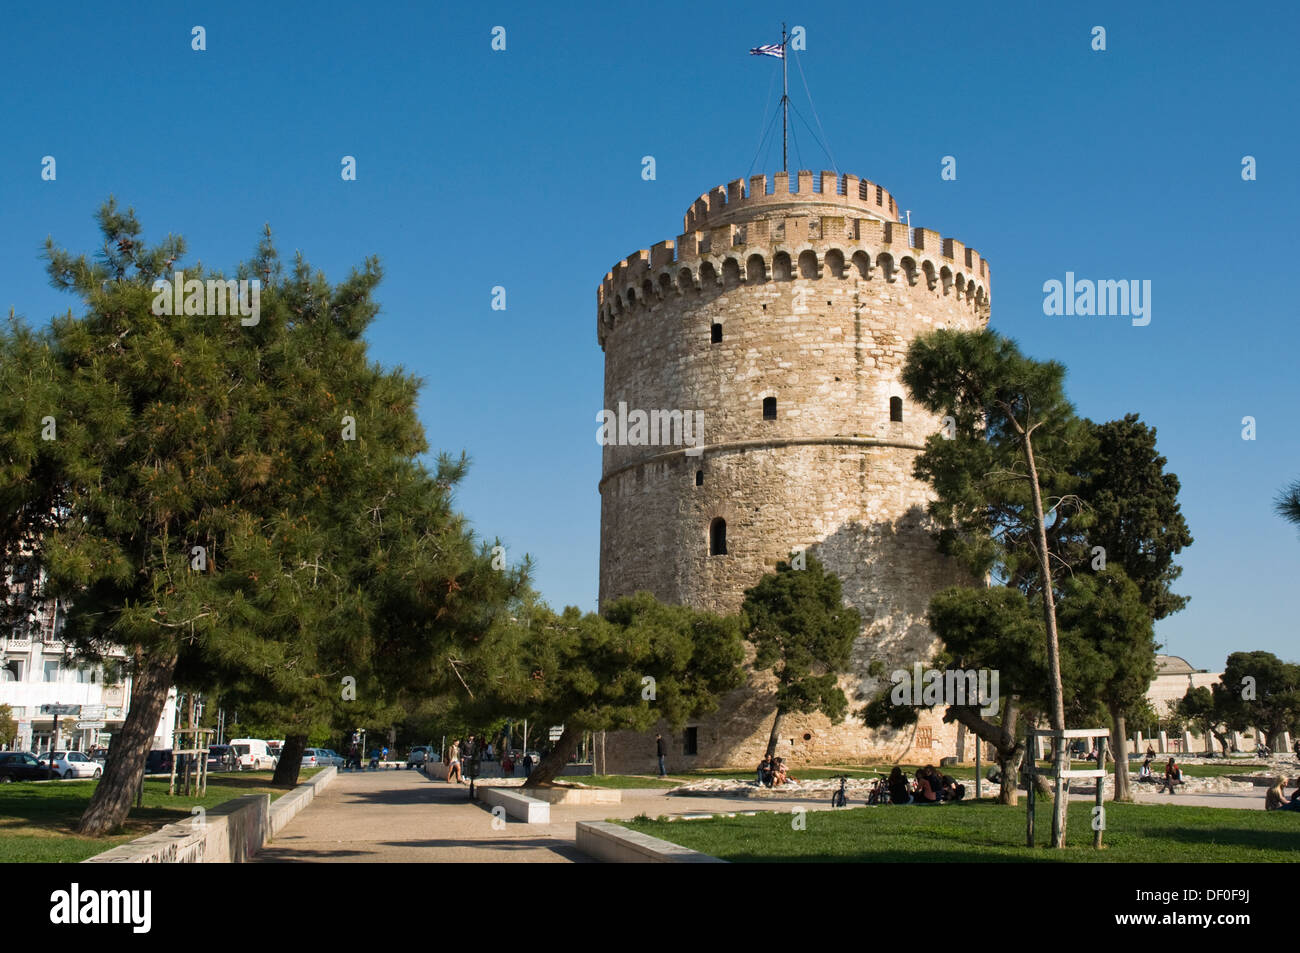 Europa, Griechenland, Thessaloniki, weißer Turm, 15. Jahrhundert, bekannt als Tower of Blood im 18. Jahrhundert als Gefängnis Stockfoto